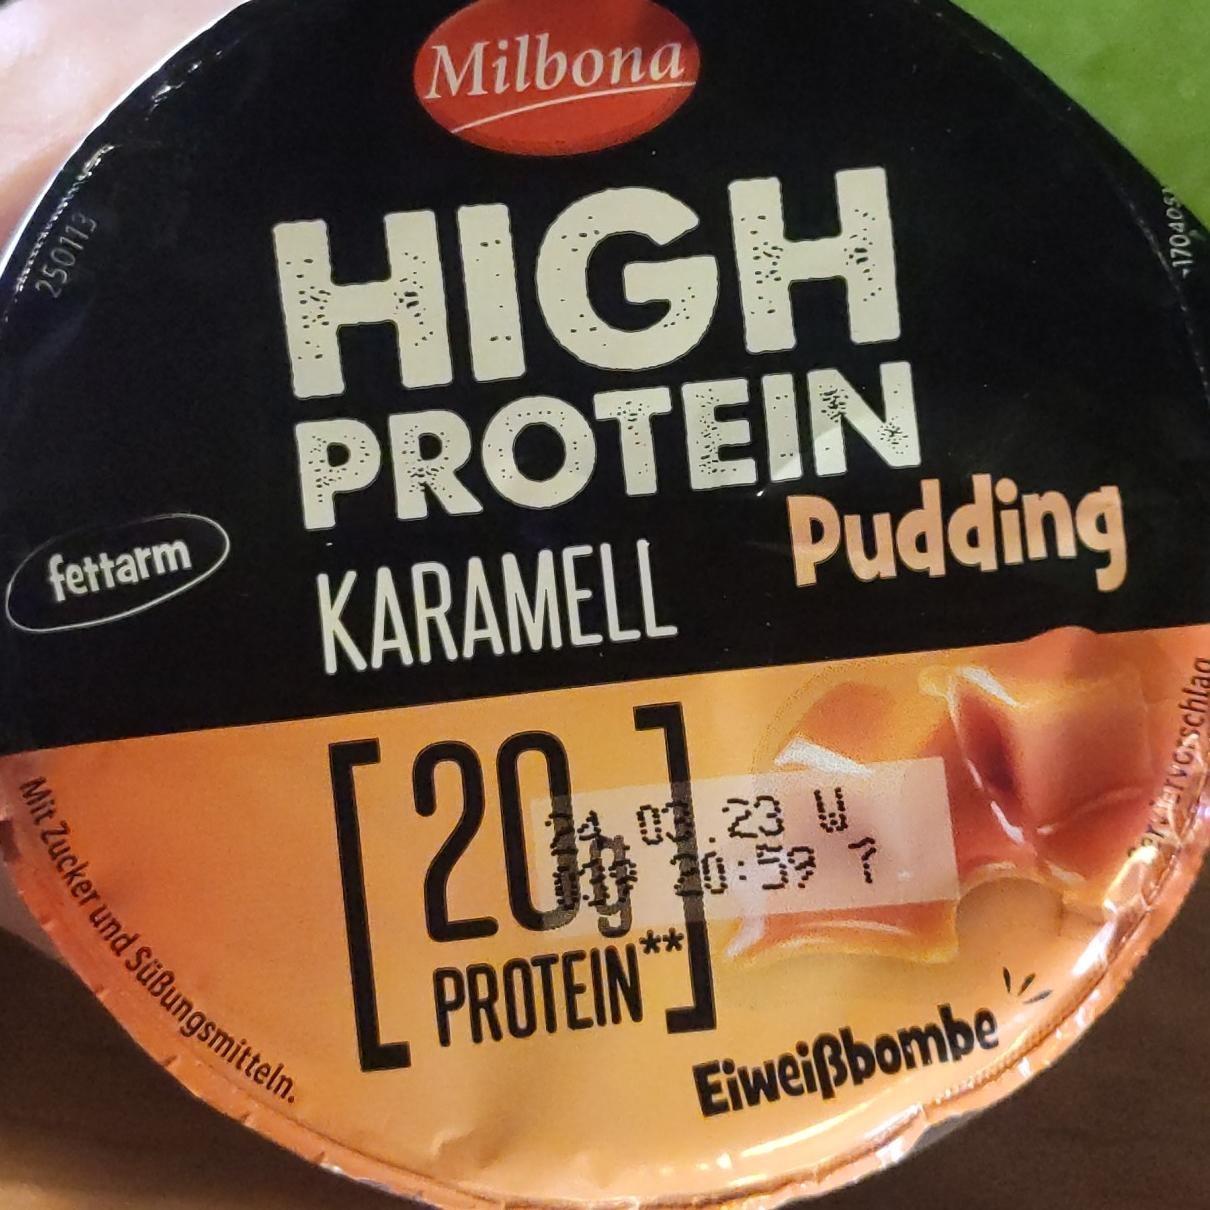 Képek - High protein Karamell pudding Milbona